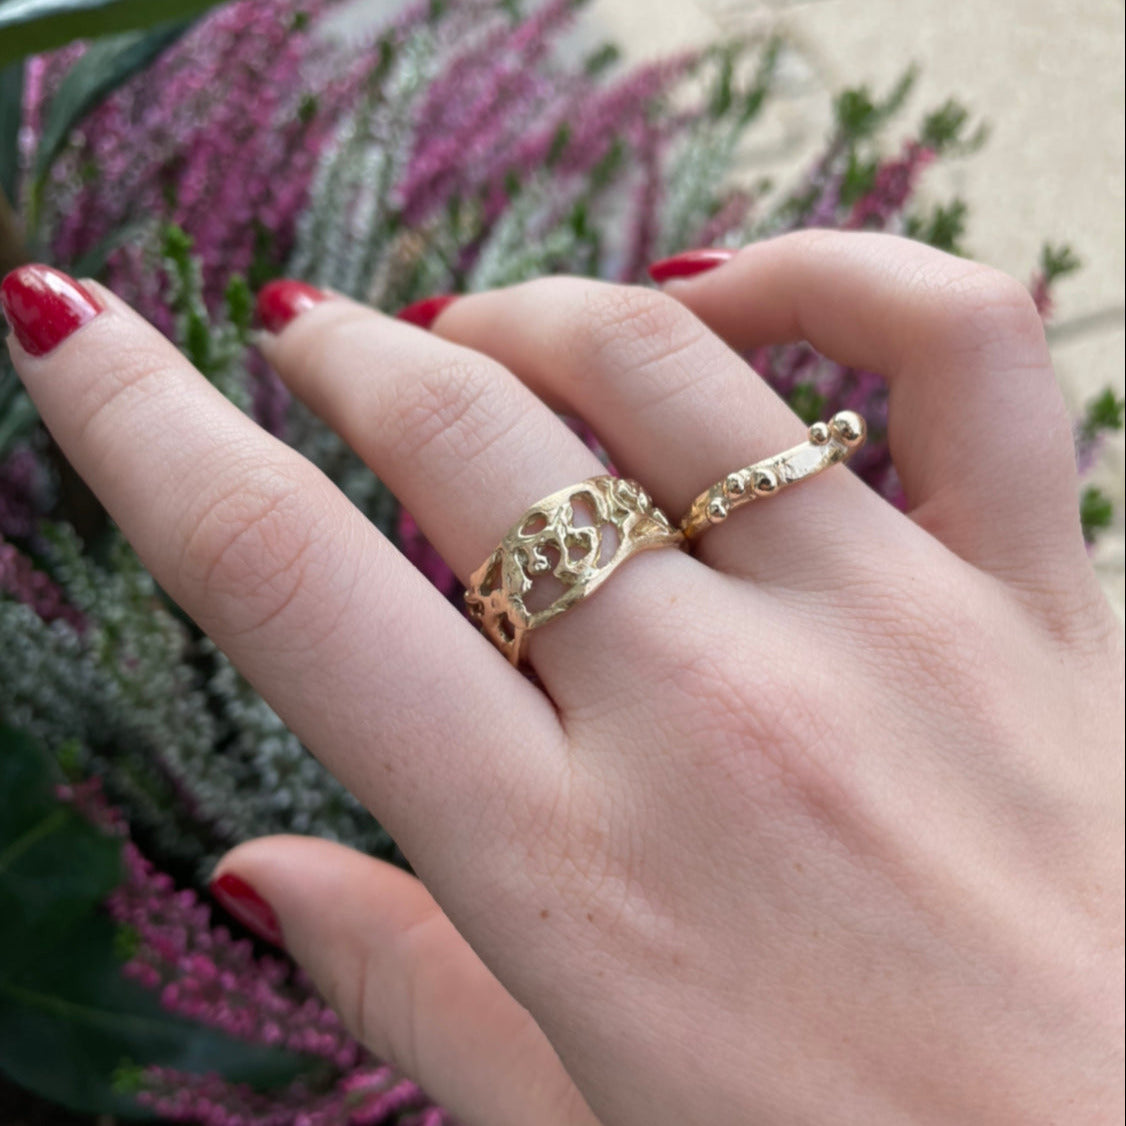 2, Smuk ring med mange detaljer, ringen er inspireret af Det røde hav, med det smukke koralrev.